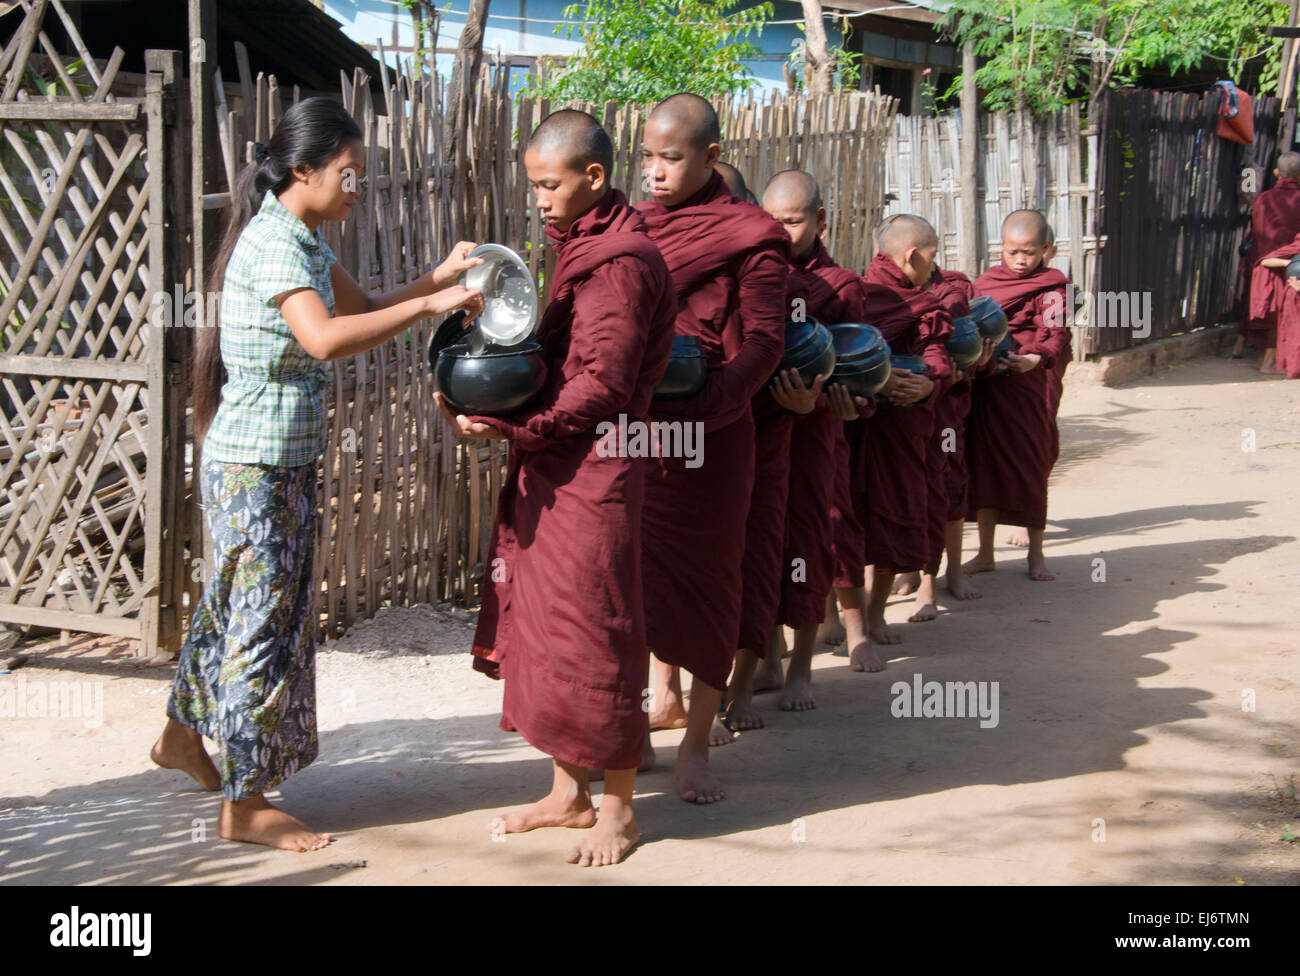 Femme de donner des aumônes la nourriture aux moines attendent en ligne, Bagan, Mandalay, Myanmar Région Banque D'Images